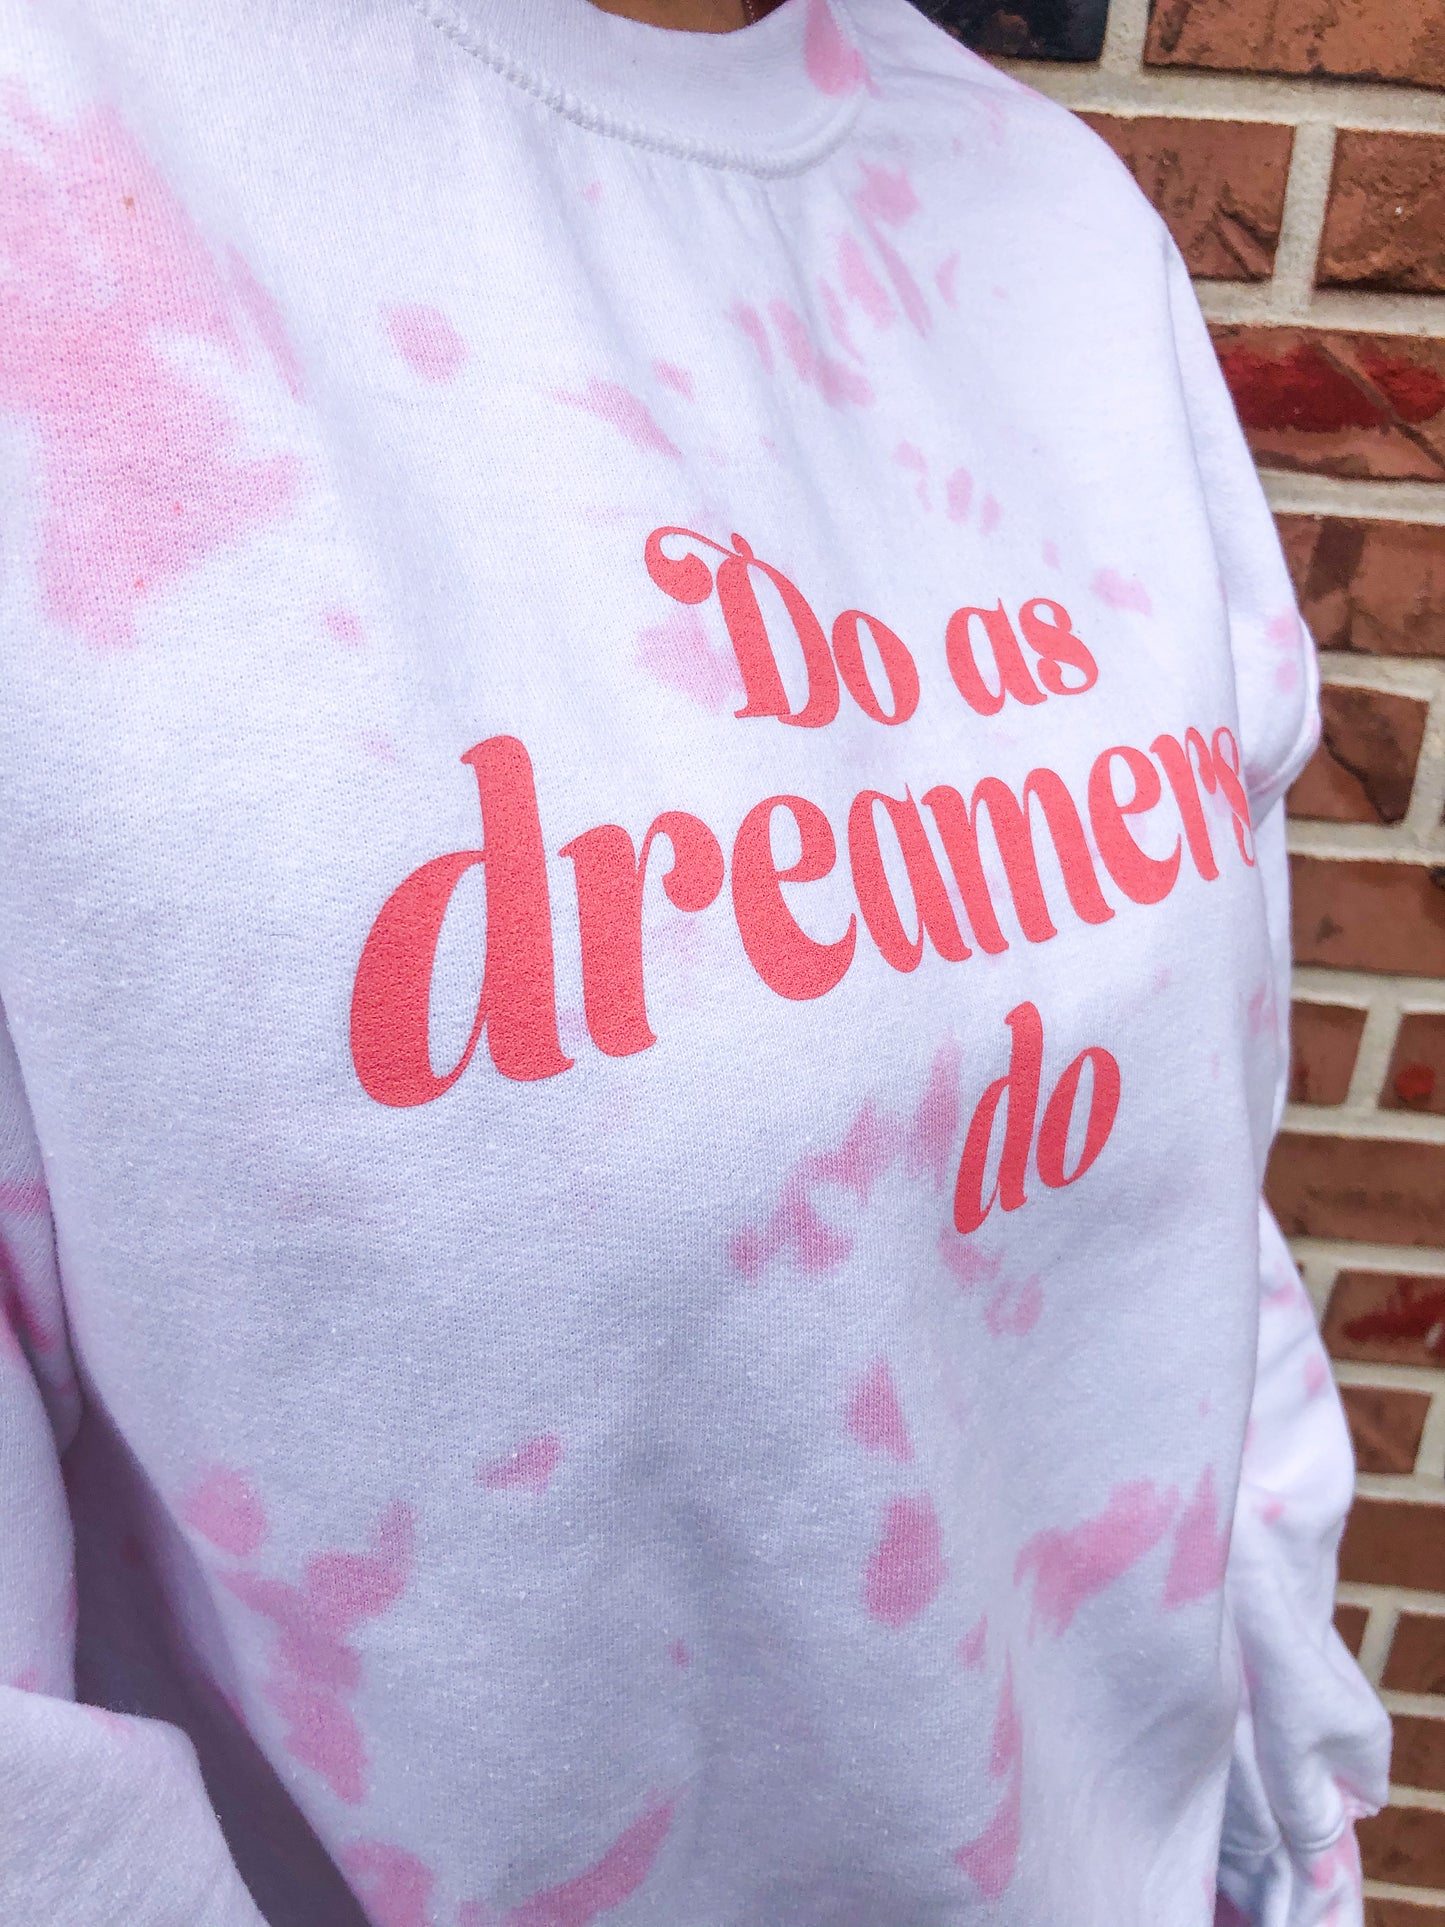 Do as Dreamers Do Tie Dye Heavy Blend Crewneck Sweatshirt